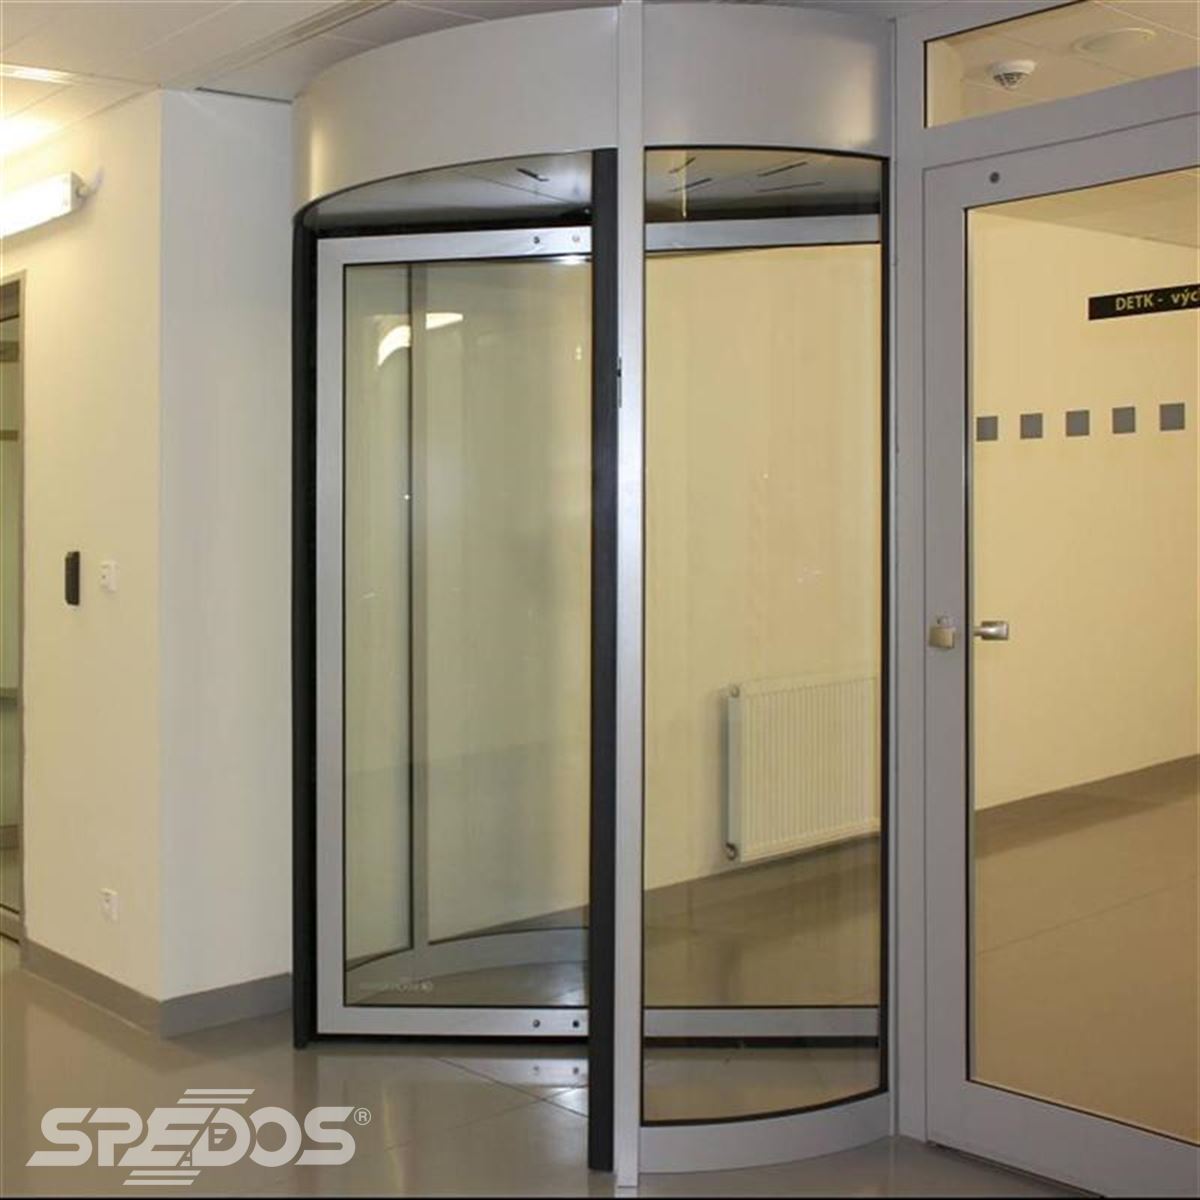 přístupové bezpečnostní dveře Spedos